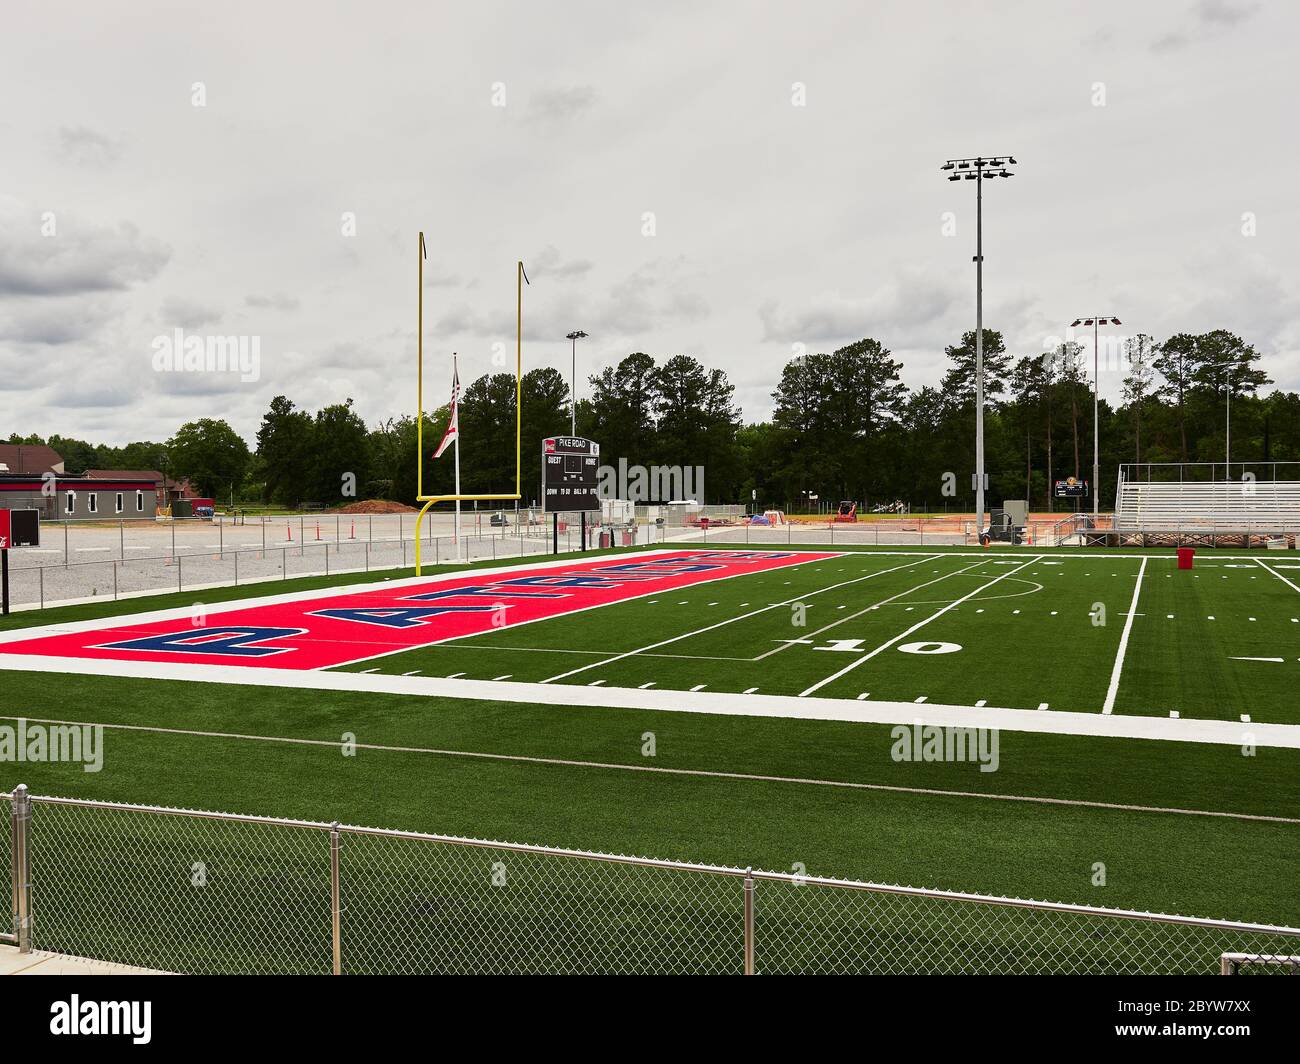 Nouveau gazon artificiel coloré à l'extrémité de la zone et le poste de but d'un terrain de football d'école secondaire à Pike Road Alabama, États-Unis. Banque D'Images